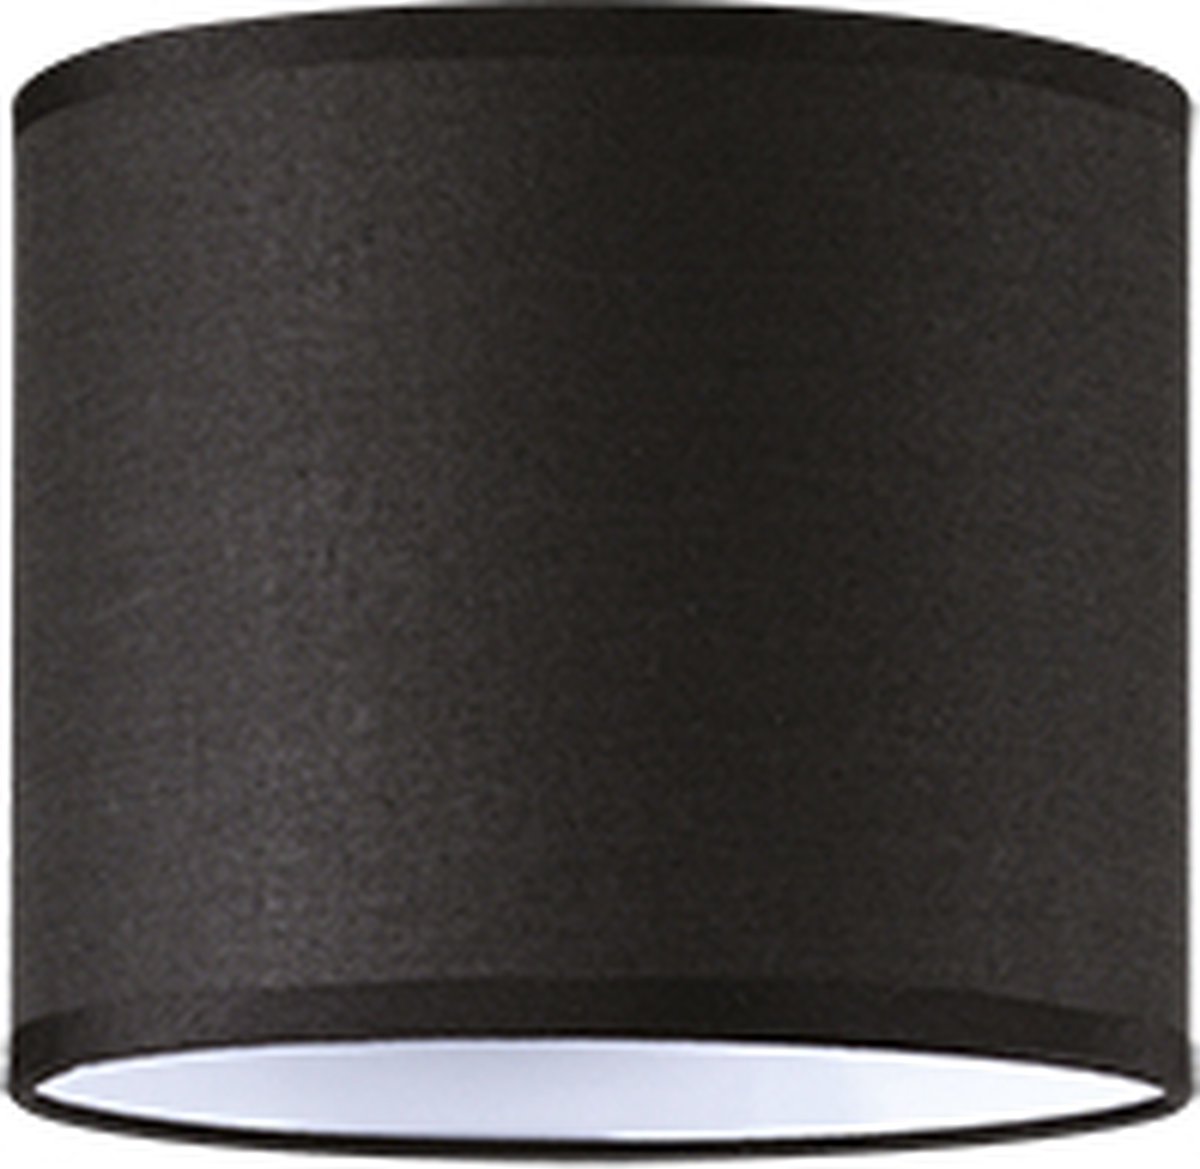 Ideal Lux Set up - Tafellamp Modern - - H:14cm - Universeel - Voor Binnen - Metaal - Tafellampen - Bureaulamp - Bureaulampen - Slaapkamer - Woonkamer - Eetkamer